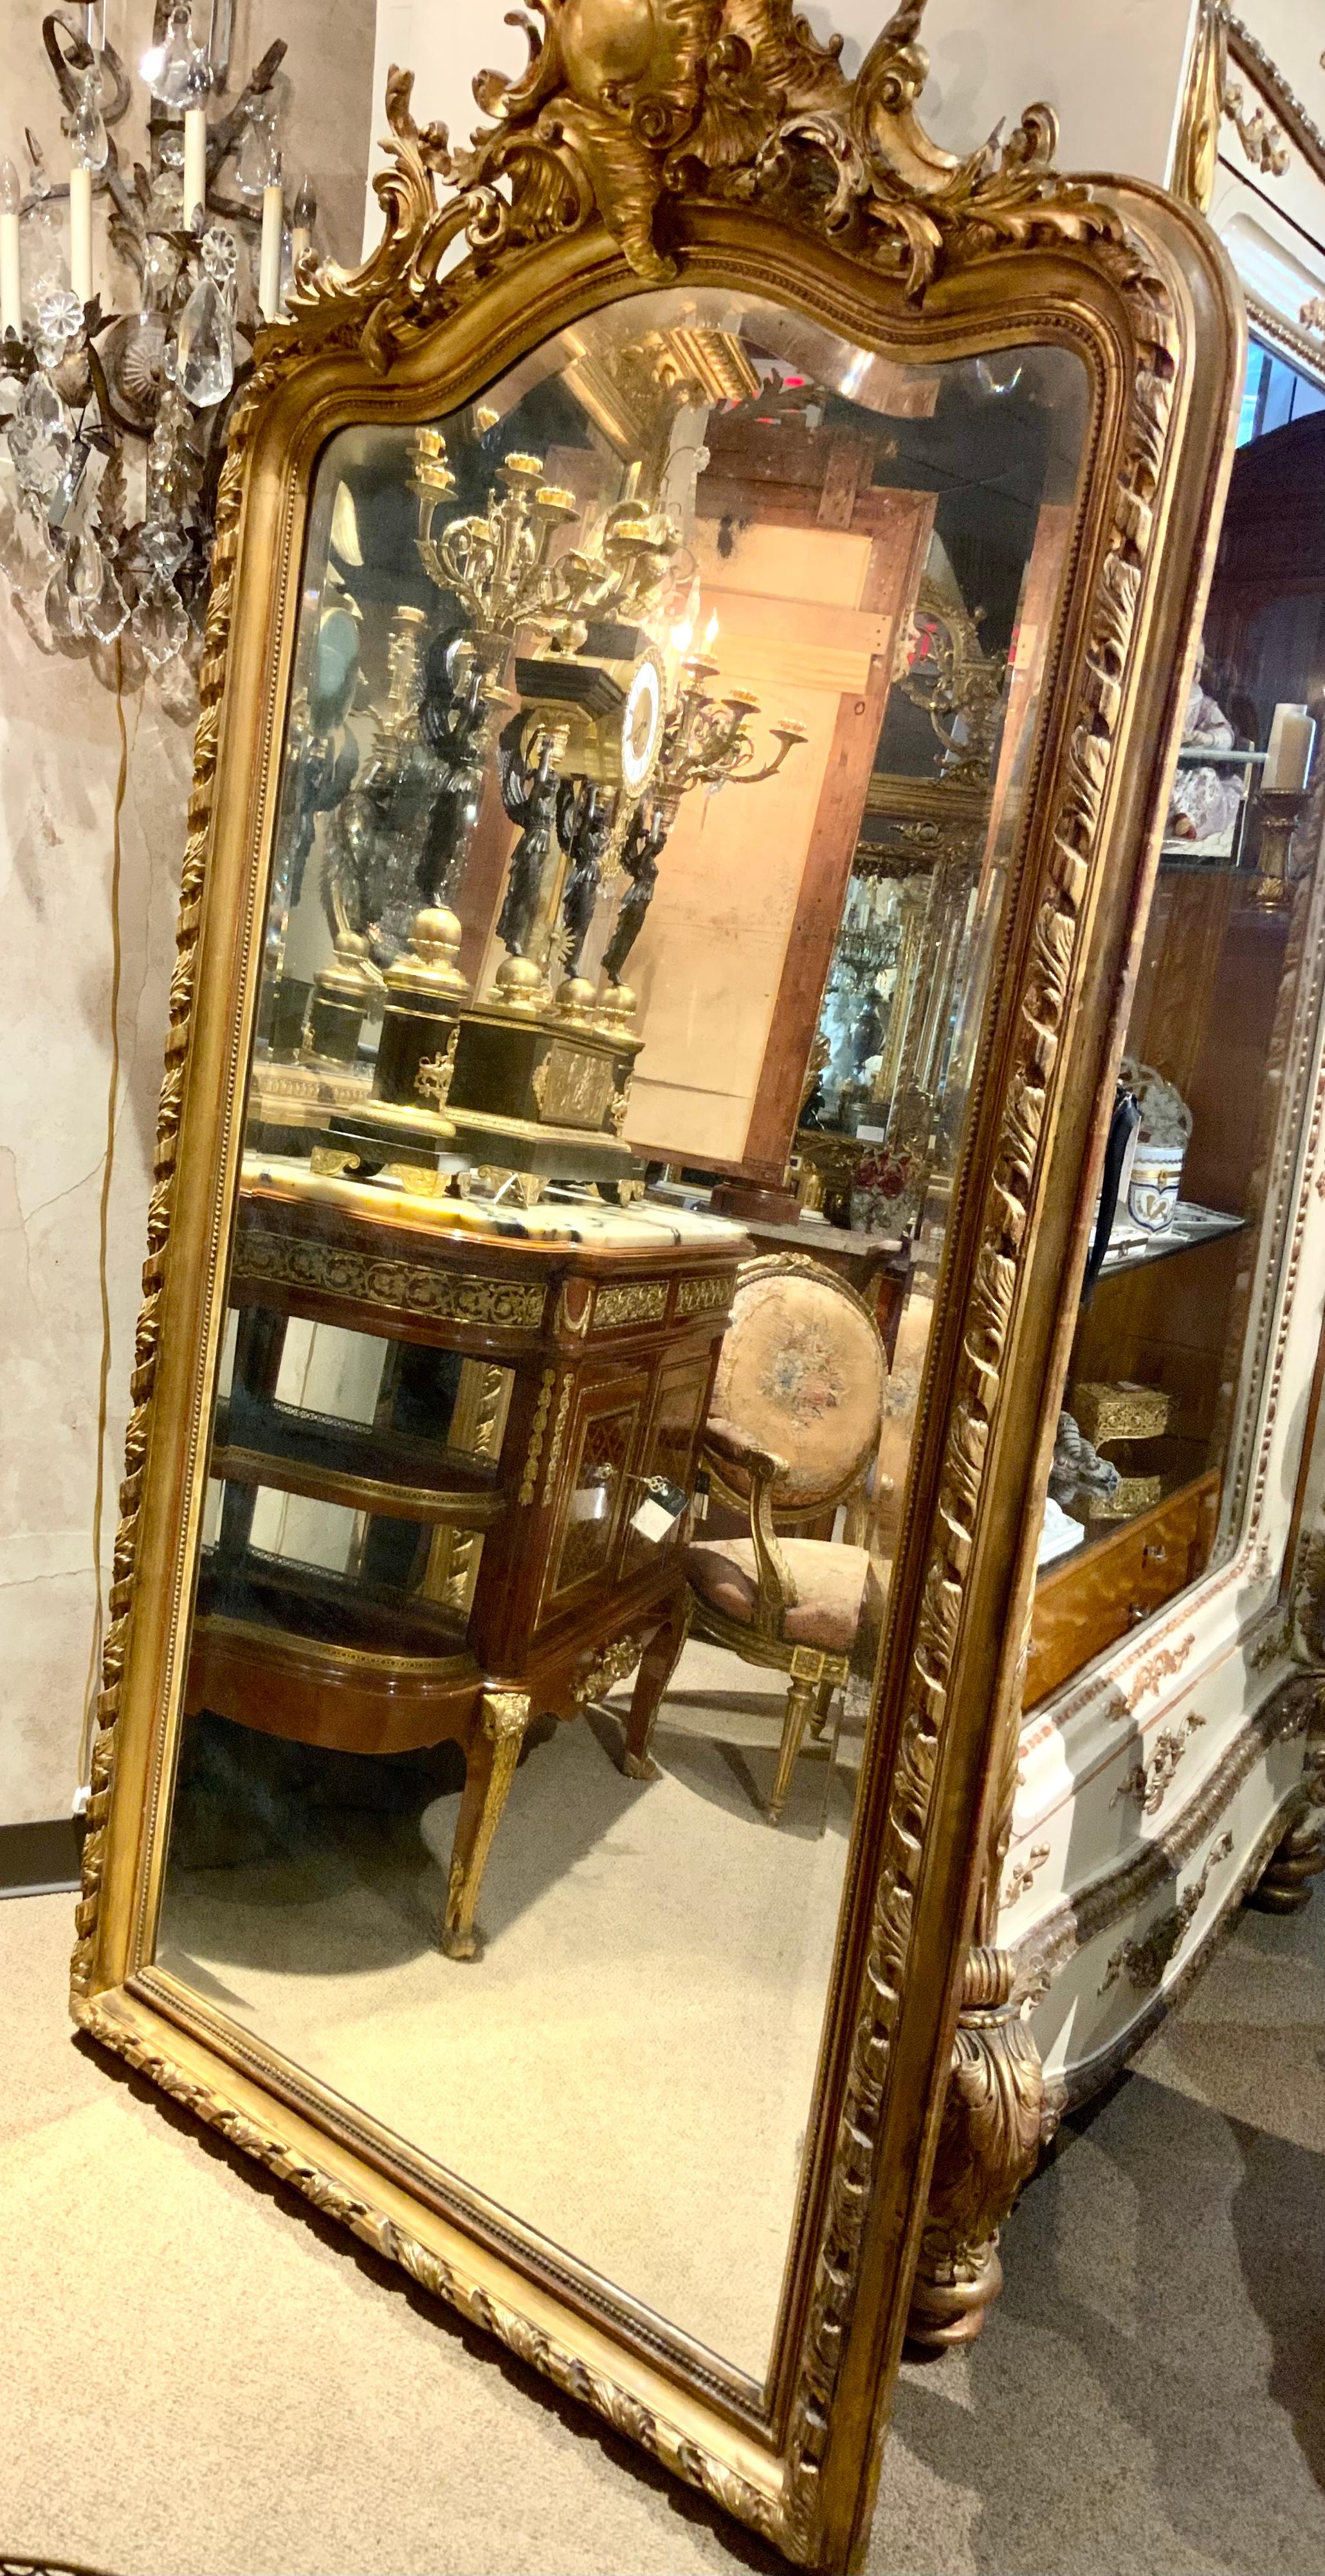 Un grand et majestueux miroir en bois doré avec une large plaque biseautée font de cette
Spécial miroir. Il a une belle dorure originale avec une profonde sculpture
Cartouche centré en haut. Motifs tourbillonnants sculptés sur le dessus
Le bord